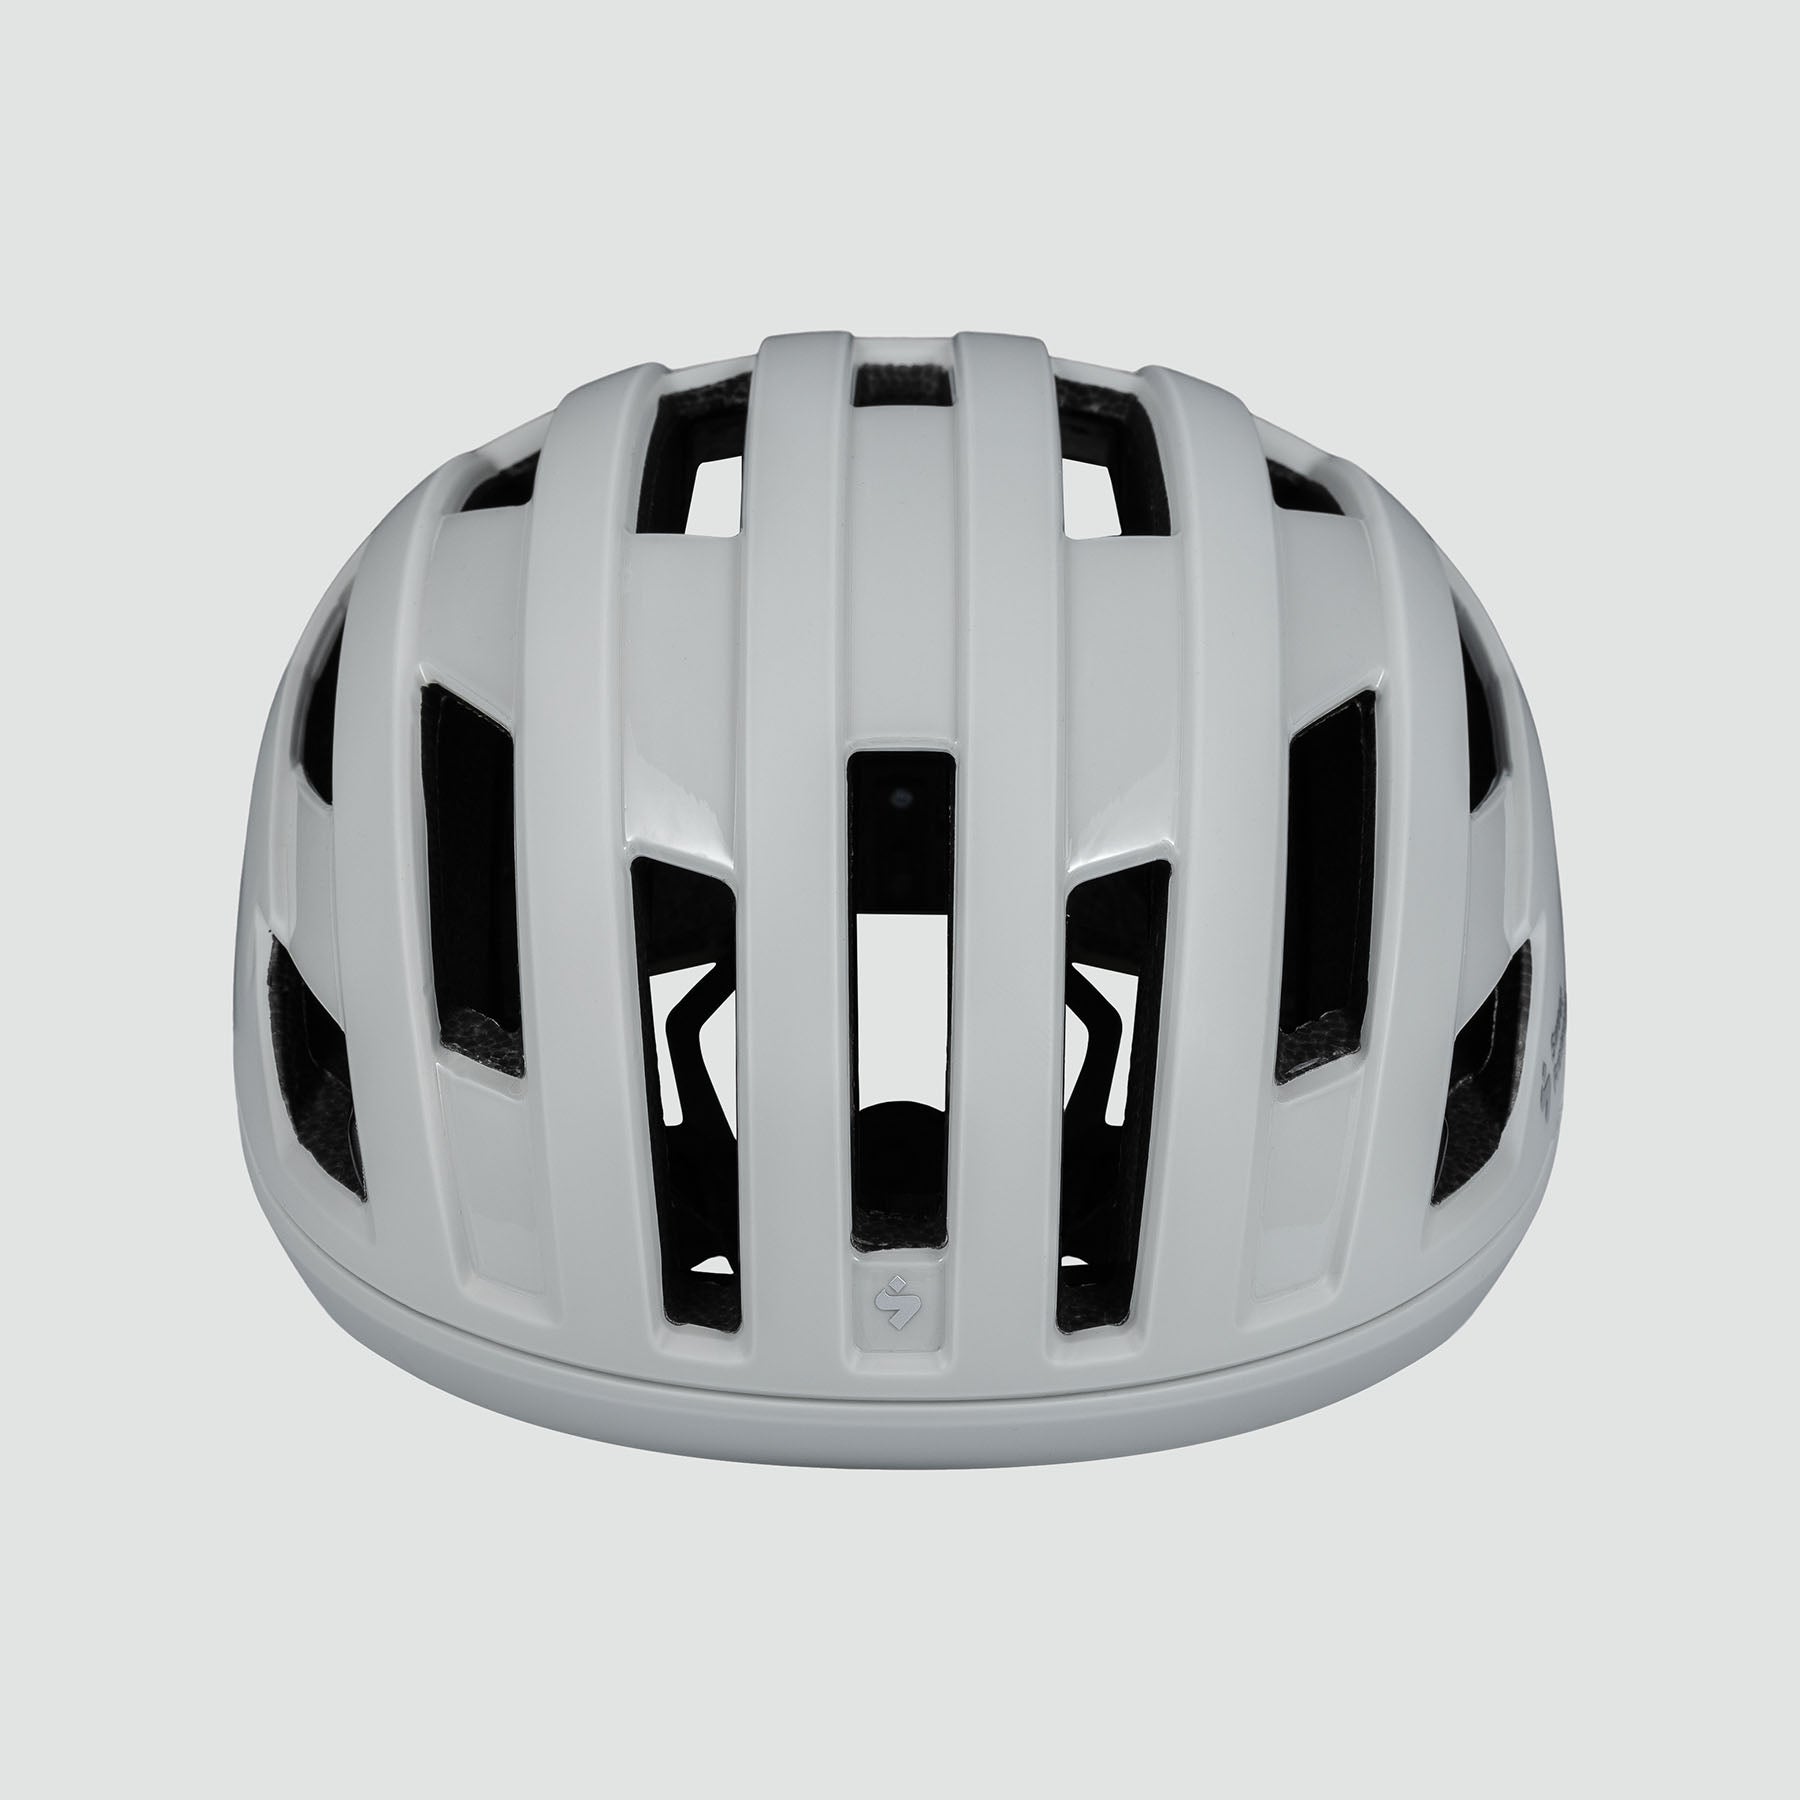 Fluxer MIPS Helmet - Bronco White